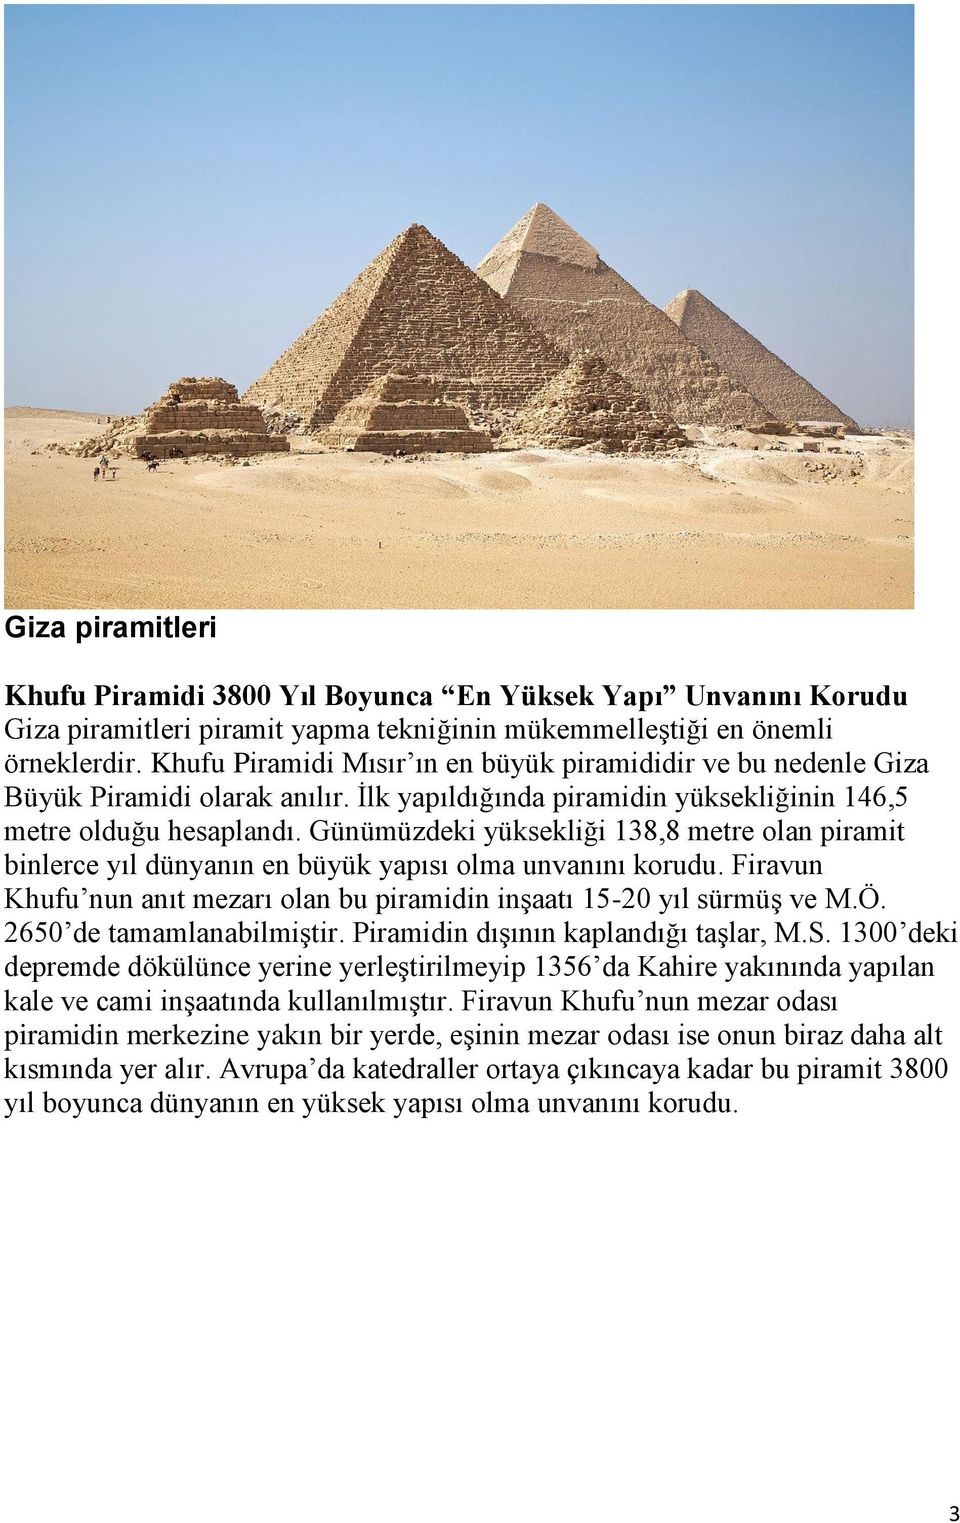 Günümüzdeki yüksekliği 138,8 metre olan piramit binlerce yıl dünyanın en büyük yapısı olma unvanını korudu. Firavun Khufu nun anıt mezarı olan bu piramidin inşaatı 15-20 yıl sürmüş ve M.Ö.